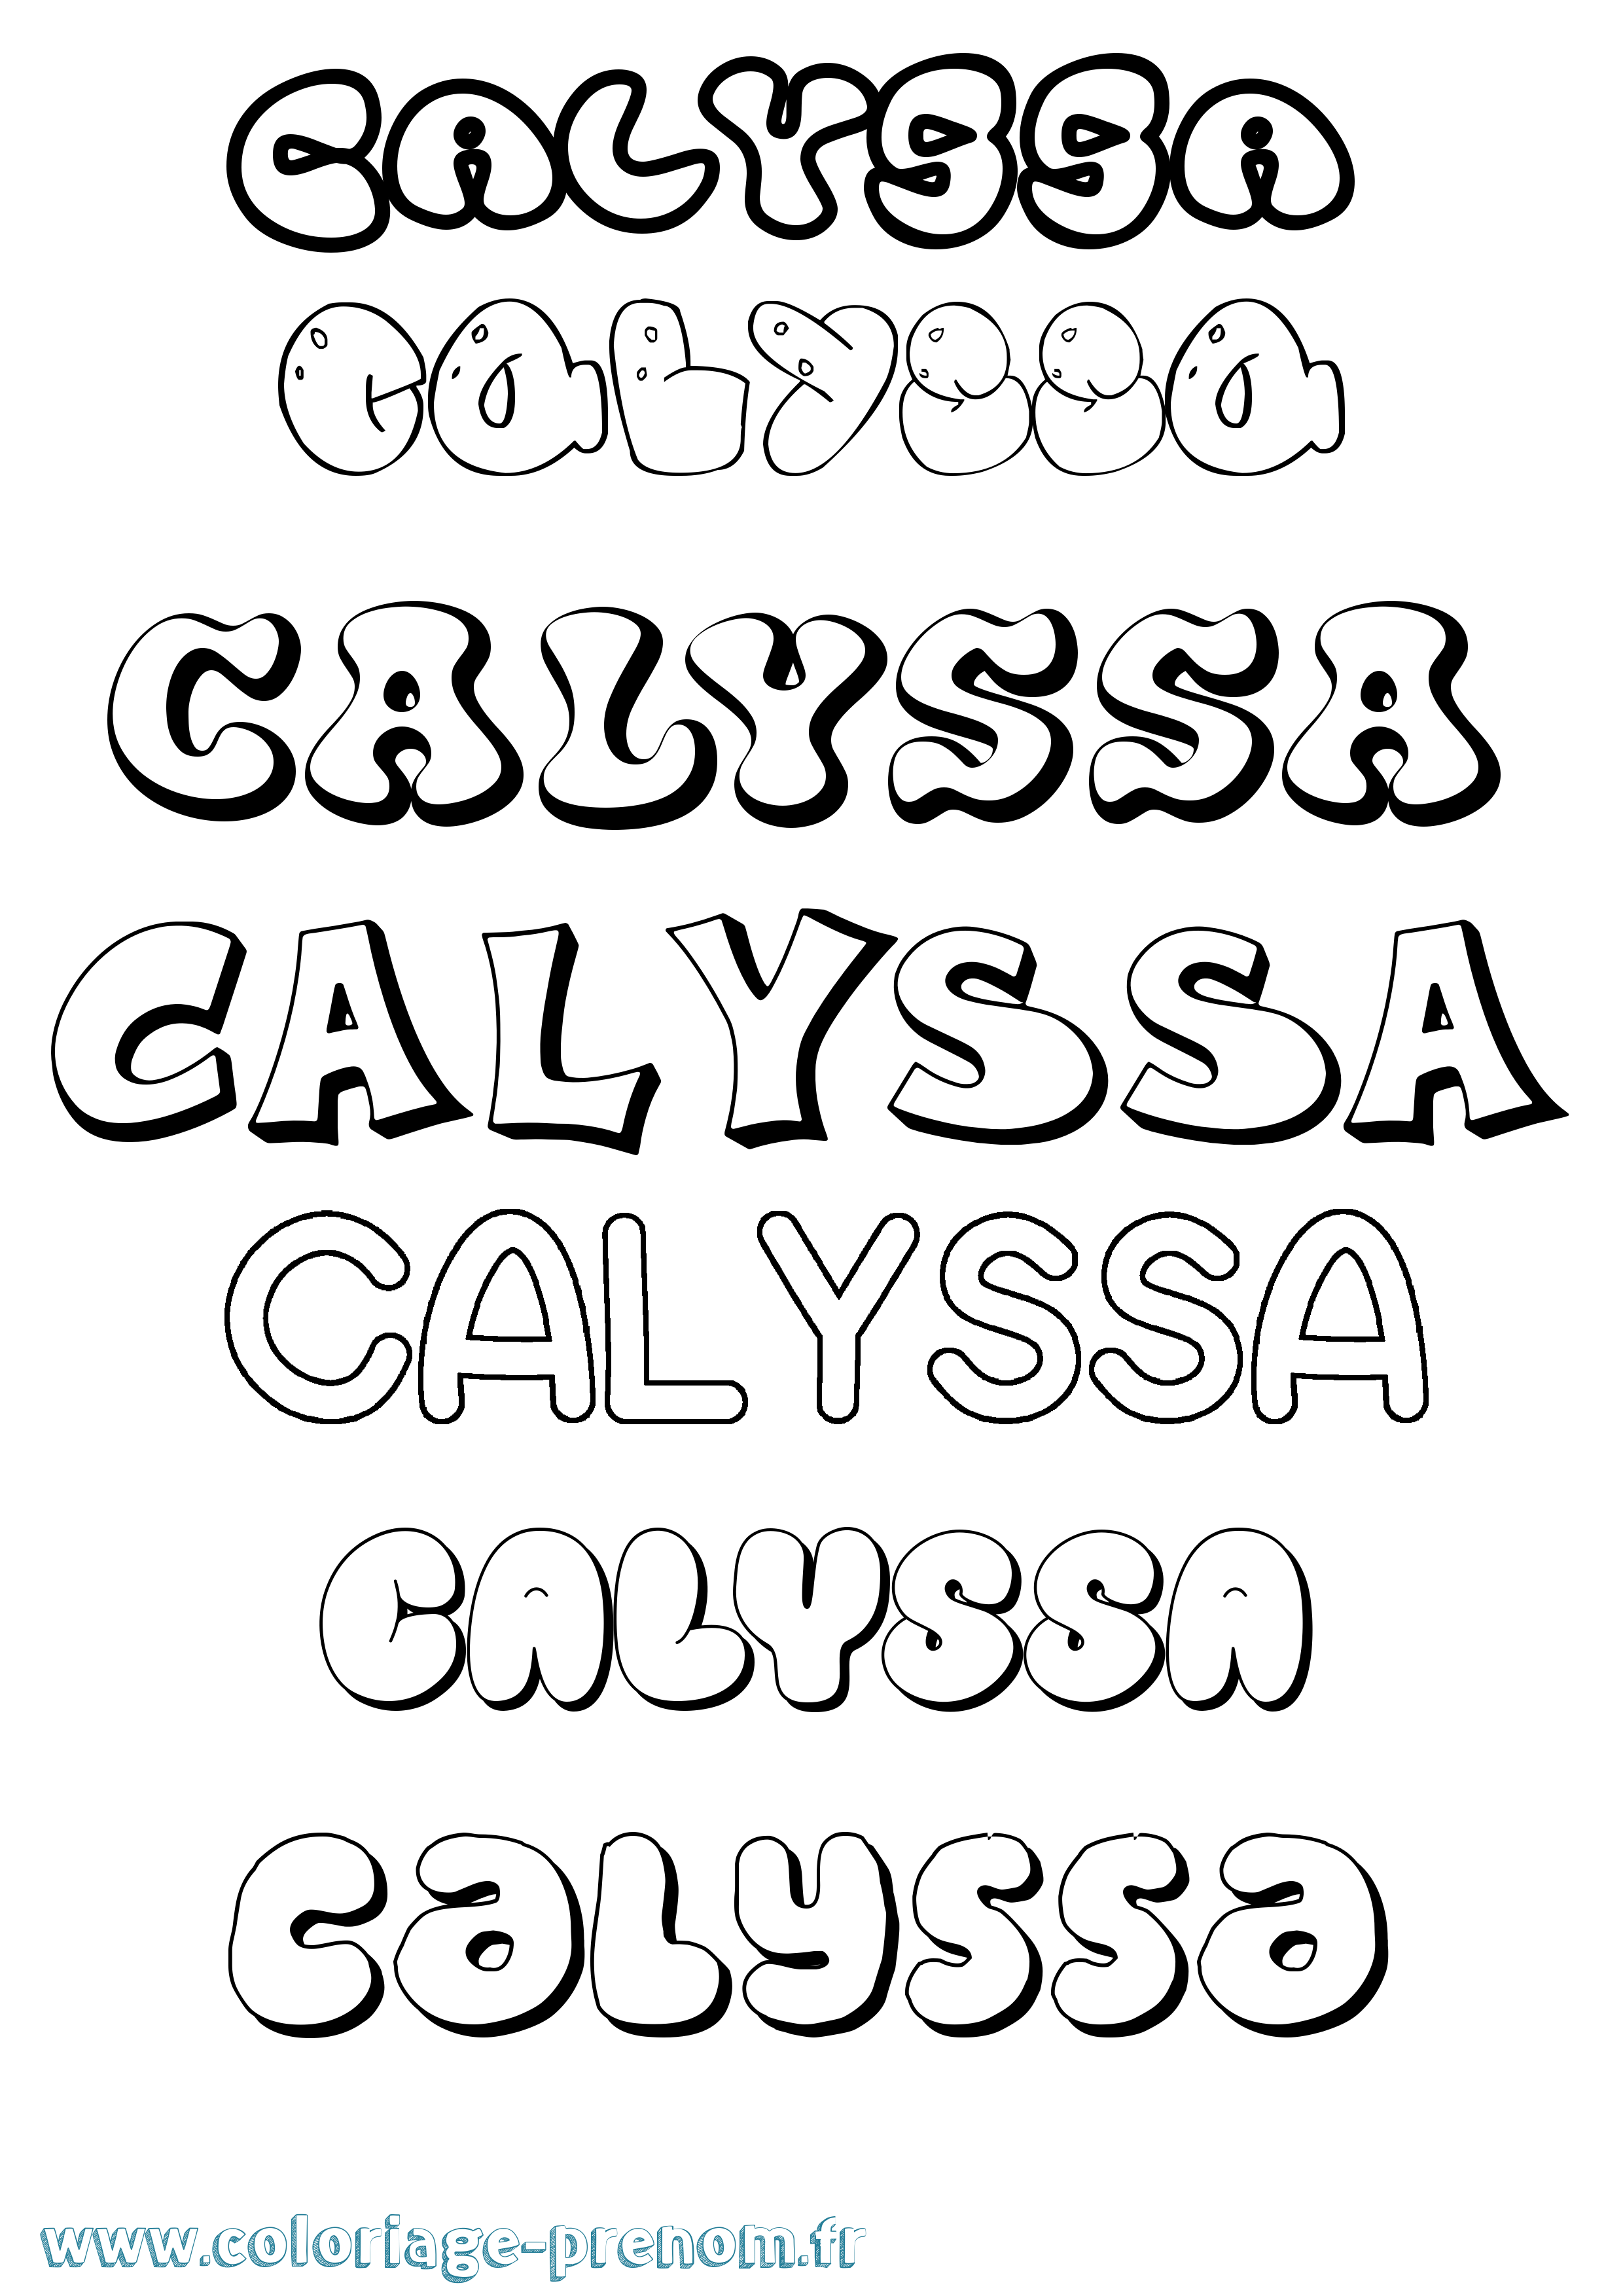 Coloriage prénom Calyssa Bubble